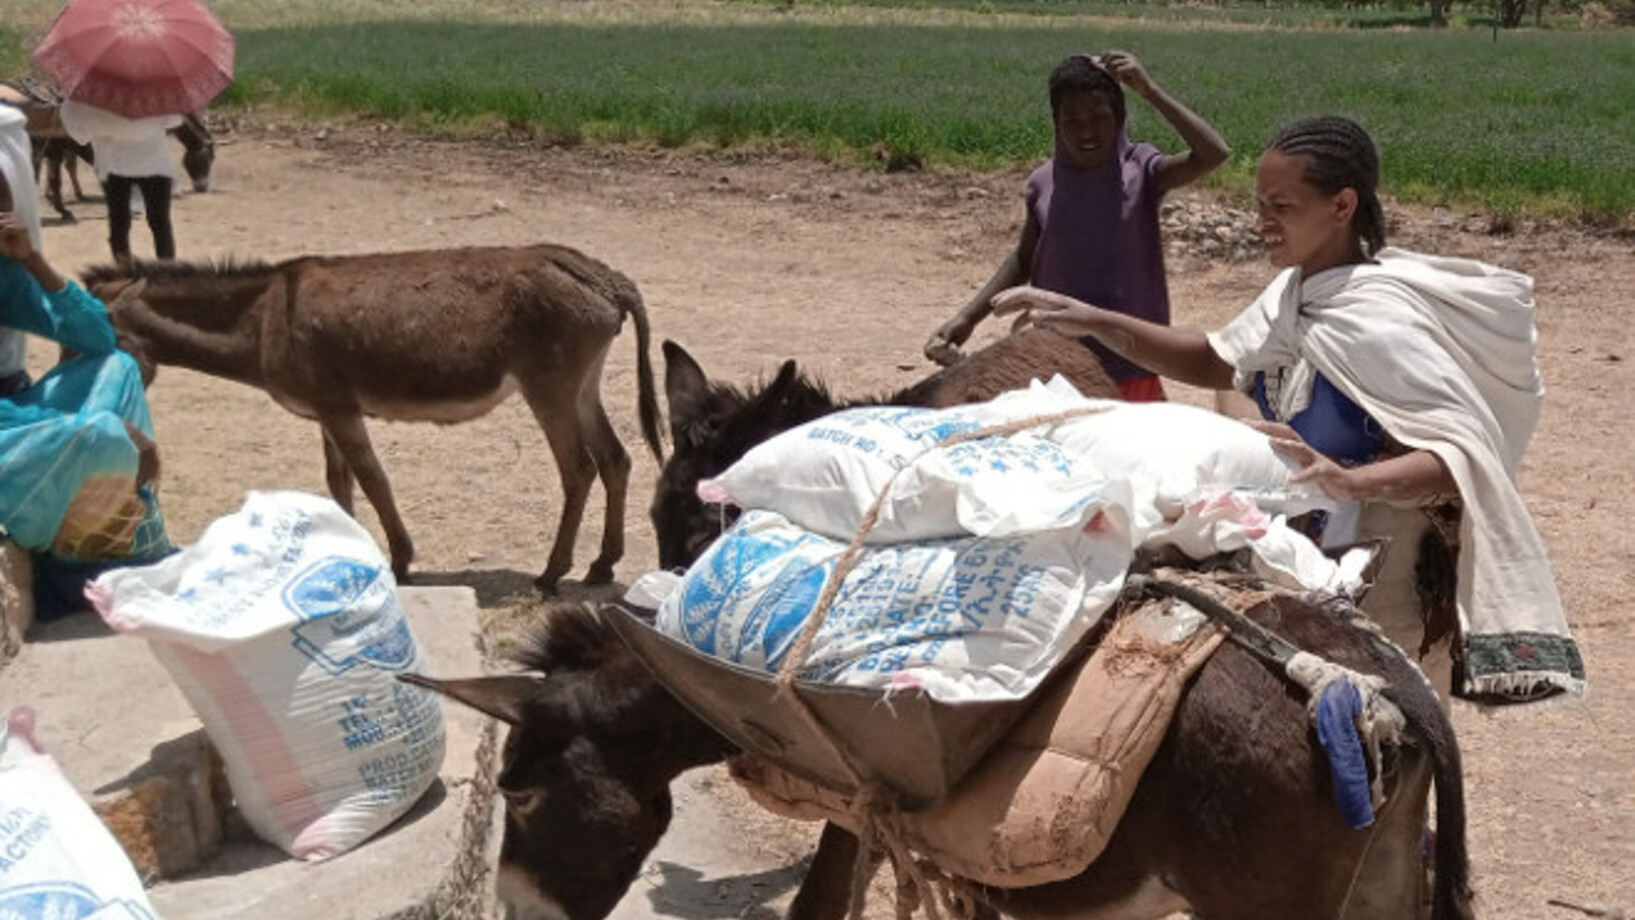 Lebensmittelverteilung nahe der Stadt Wukro in Äthiopien - Stiftung Menschen für Menschen